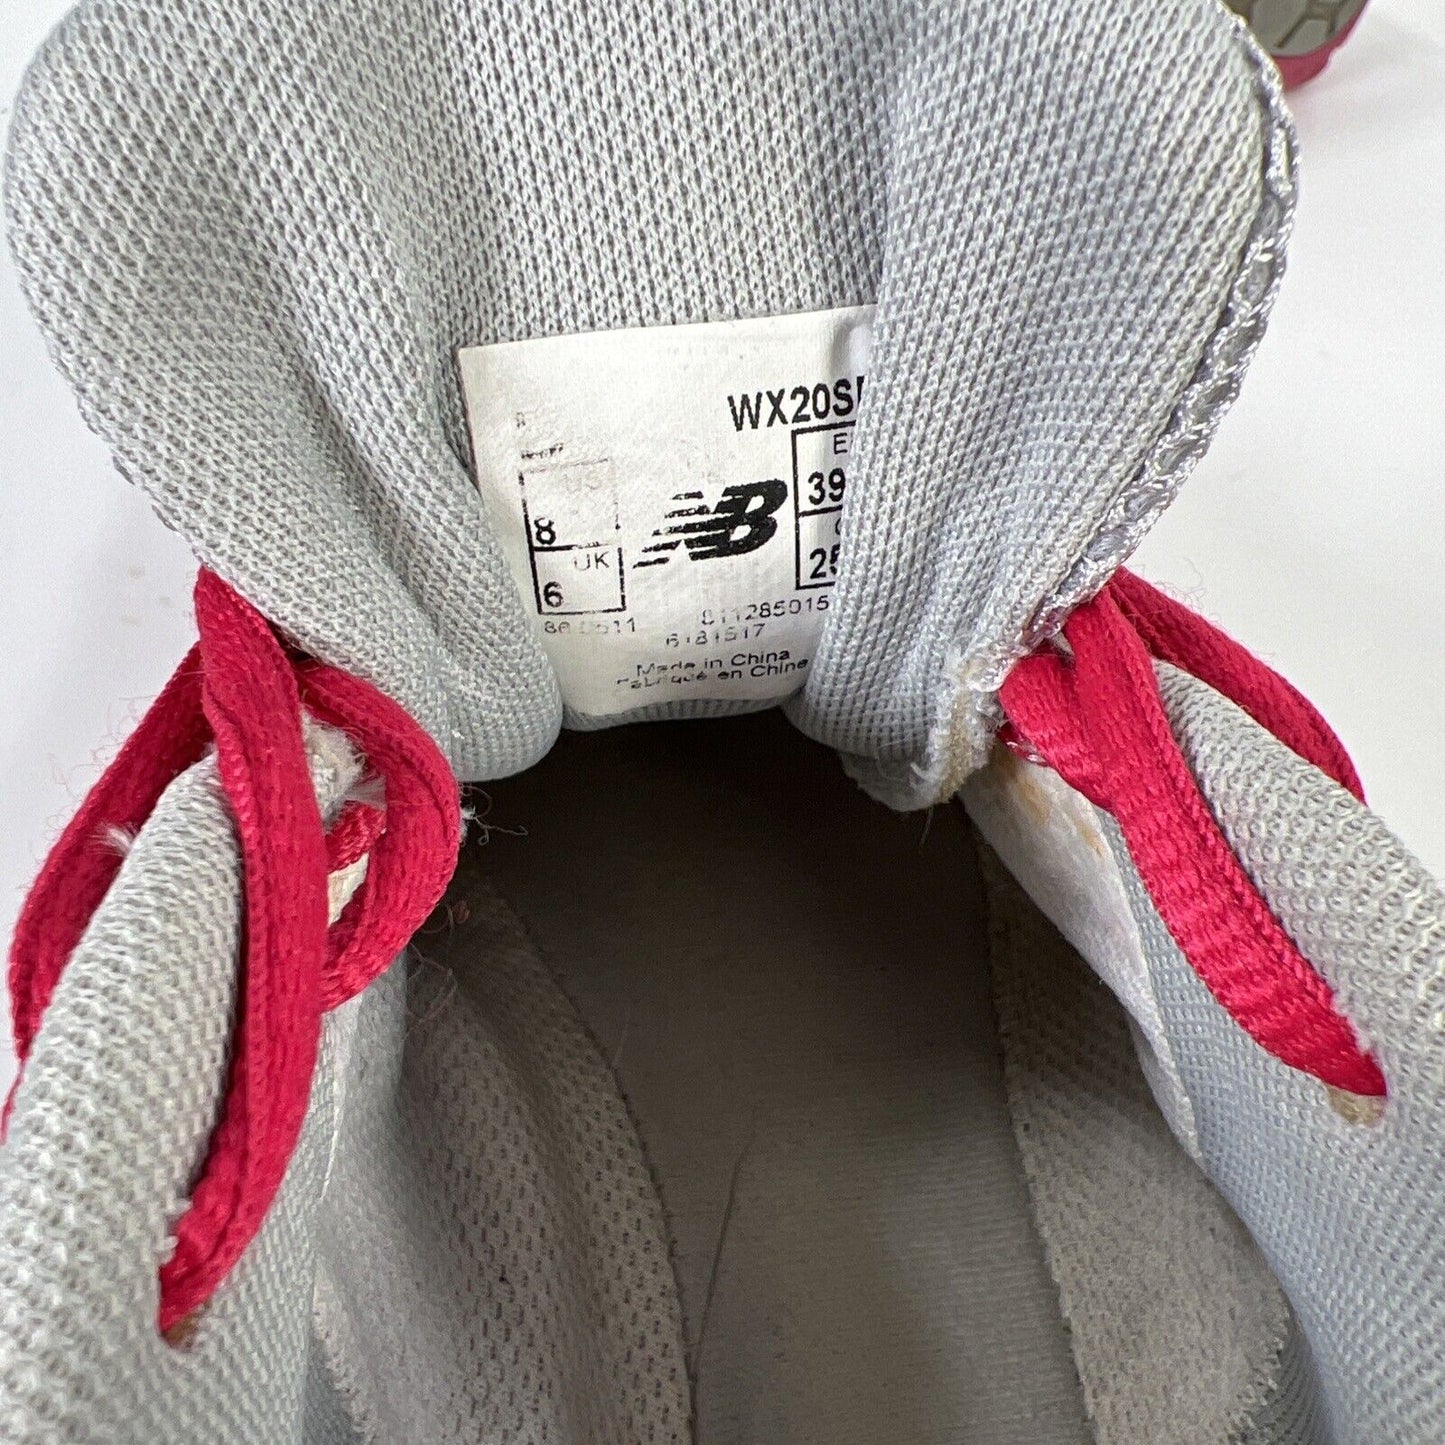 New Balance Minimus - Zapatos deportivos con cordones para mujer, color gris/rosa, 8